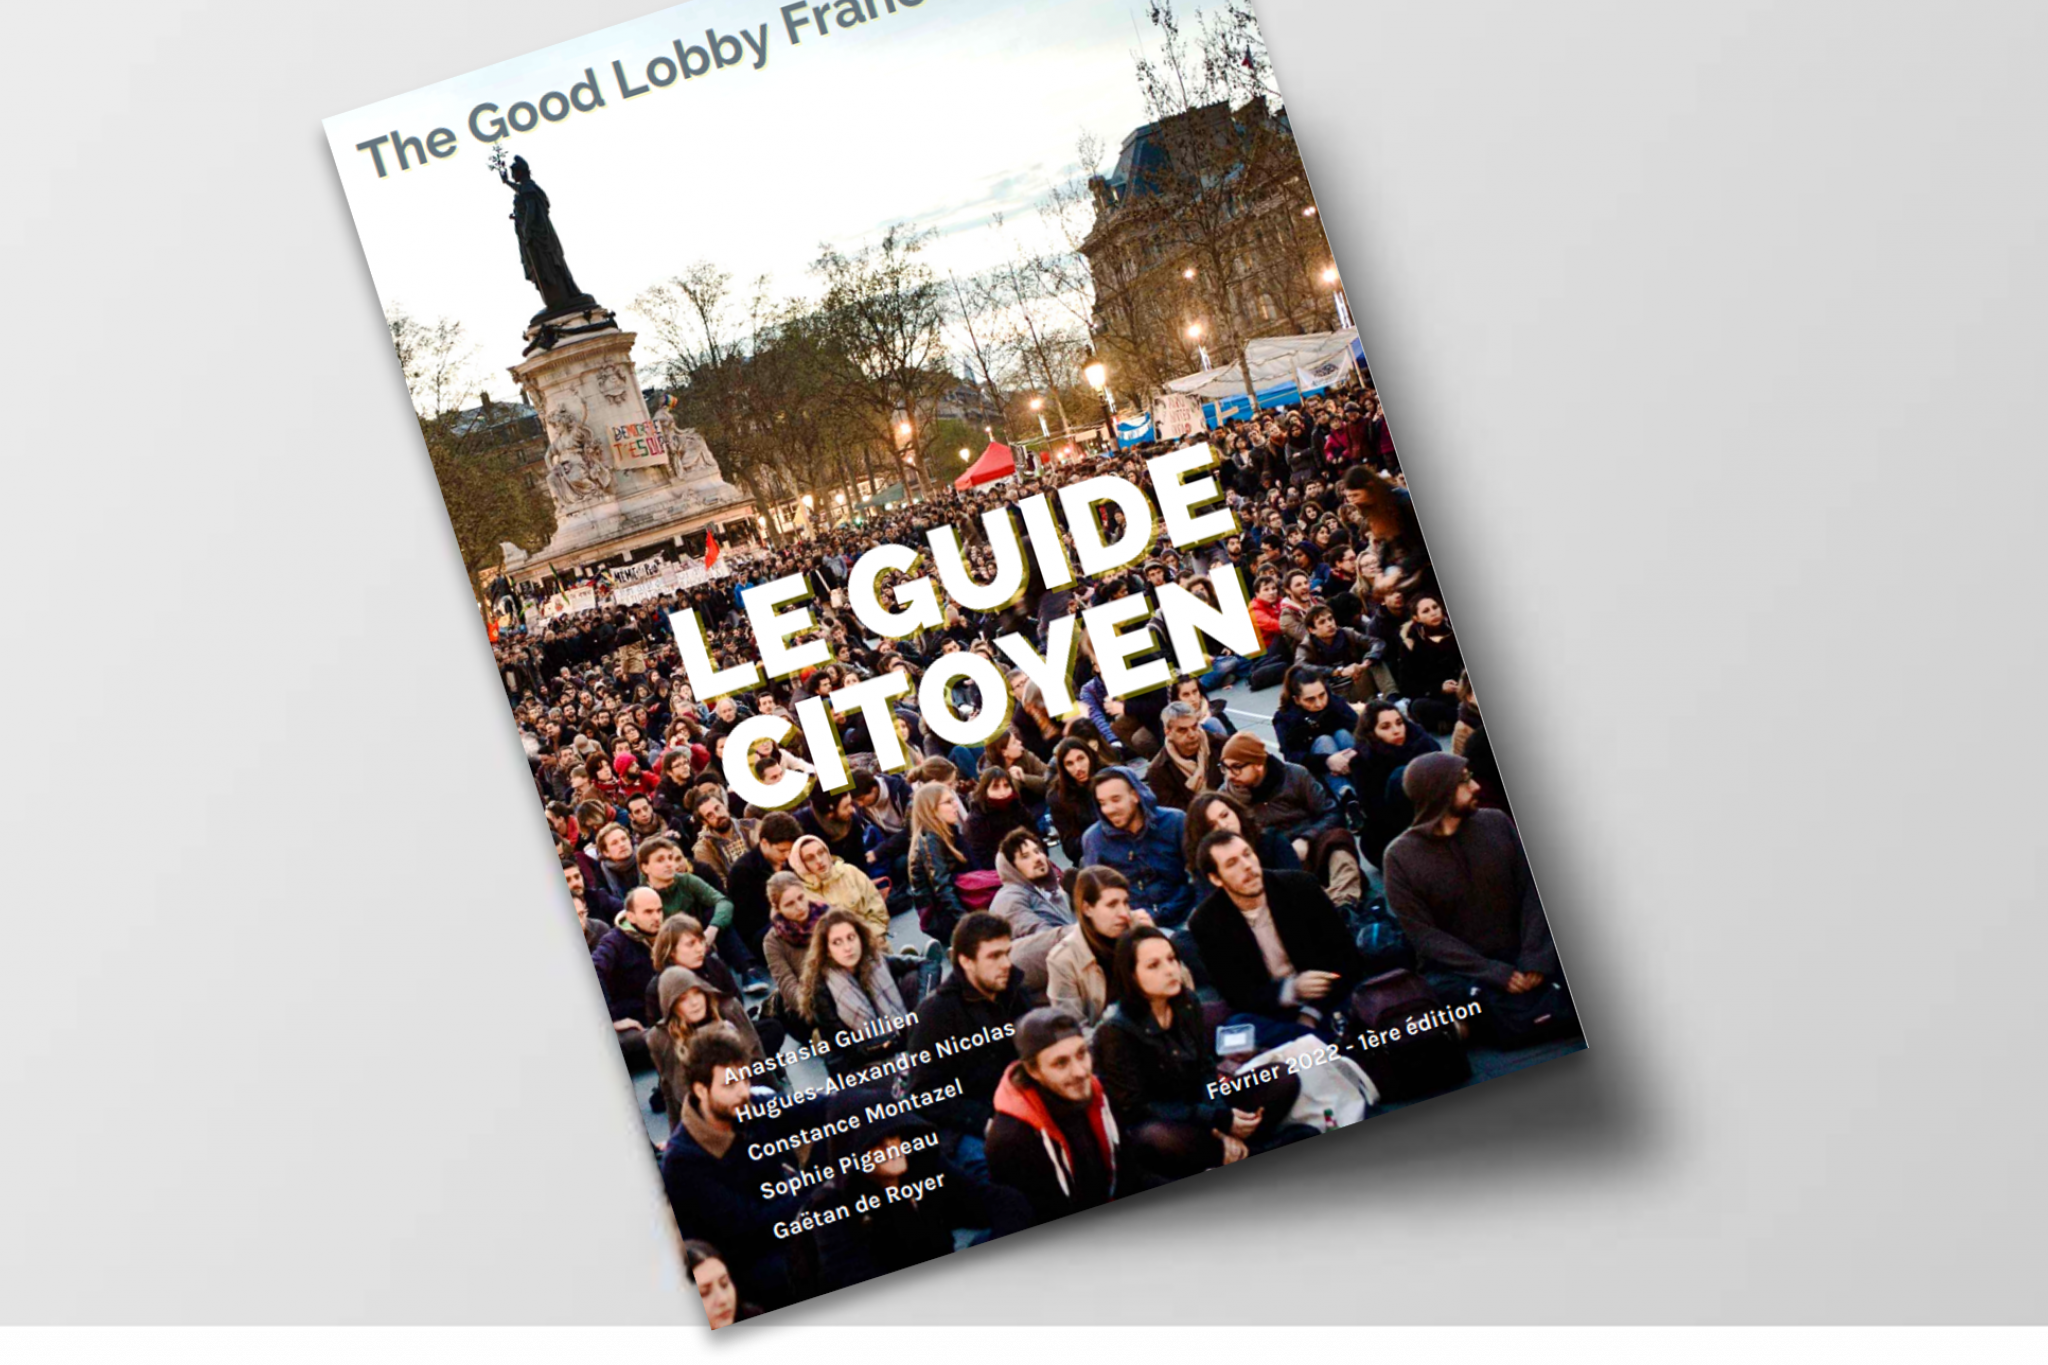 The Good Lobby édite un Guide citoyen du plaidoyer